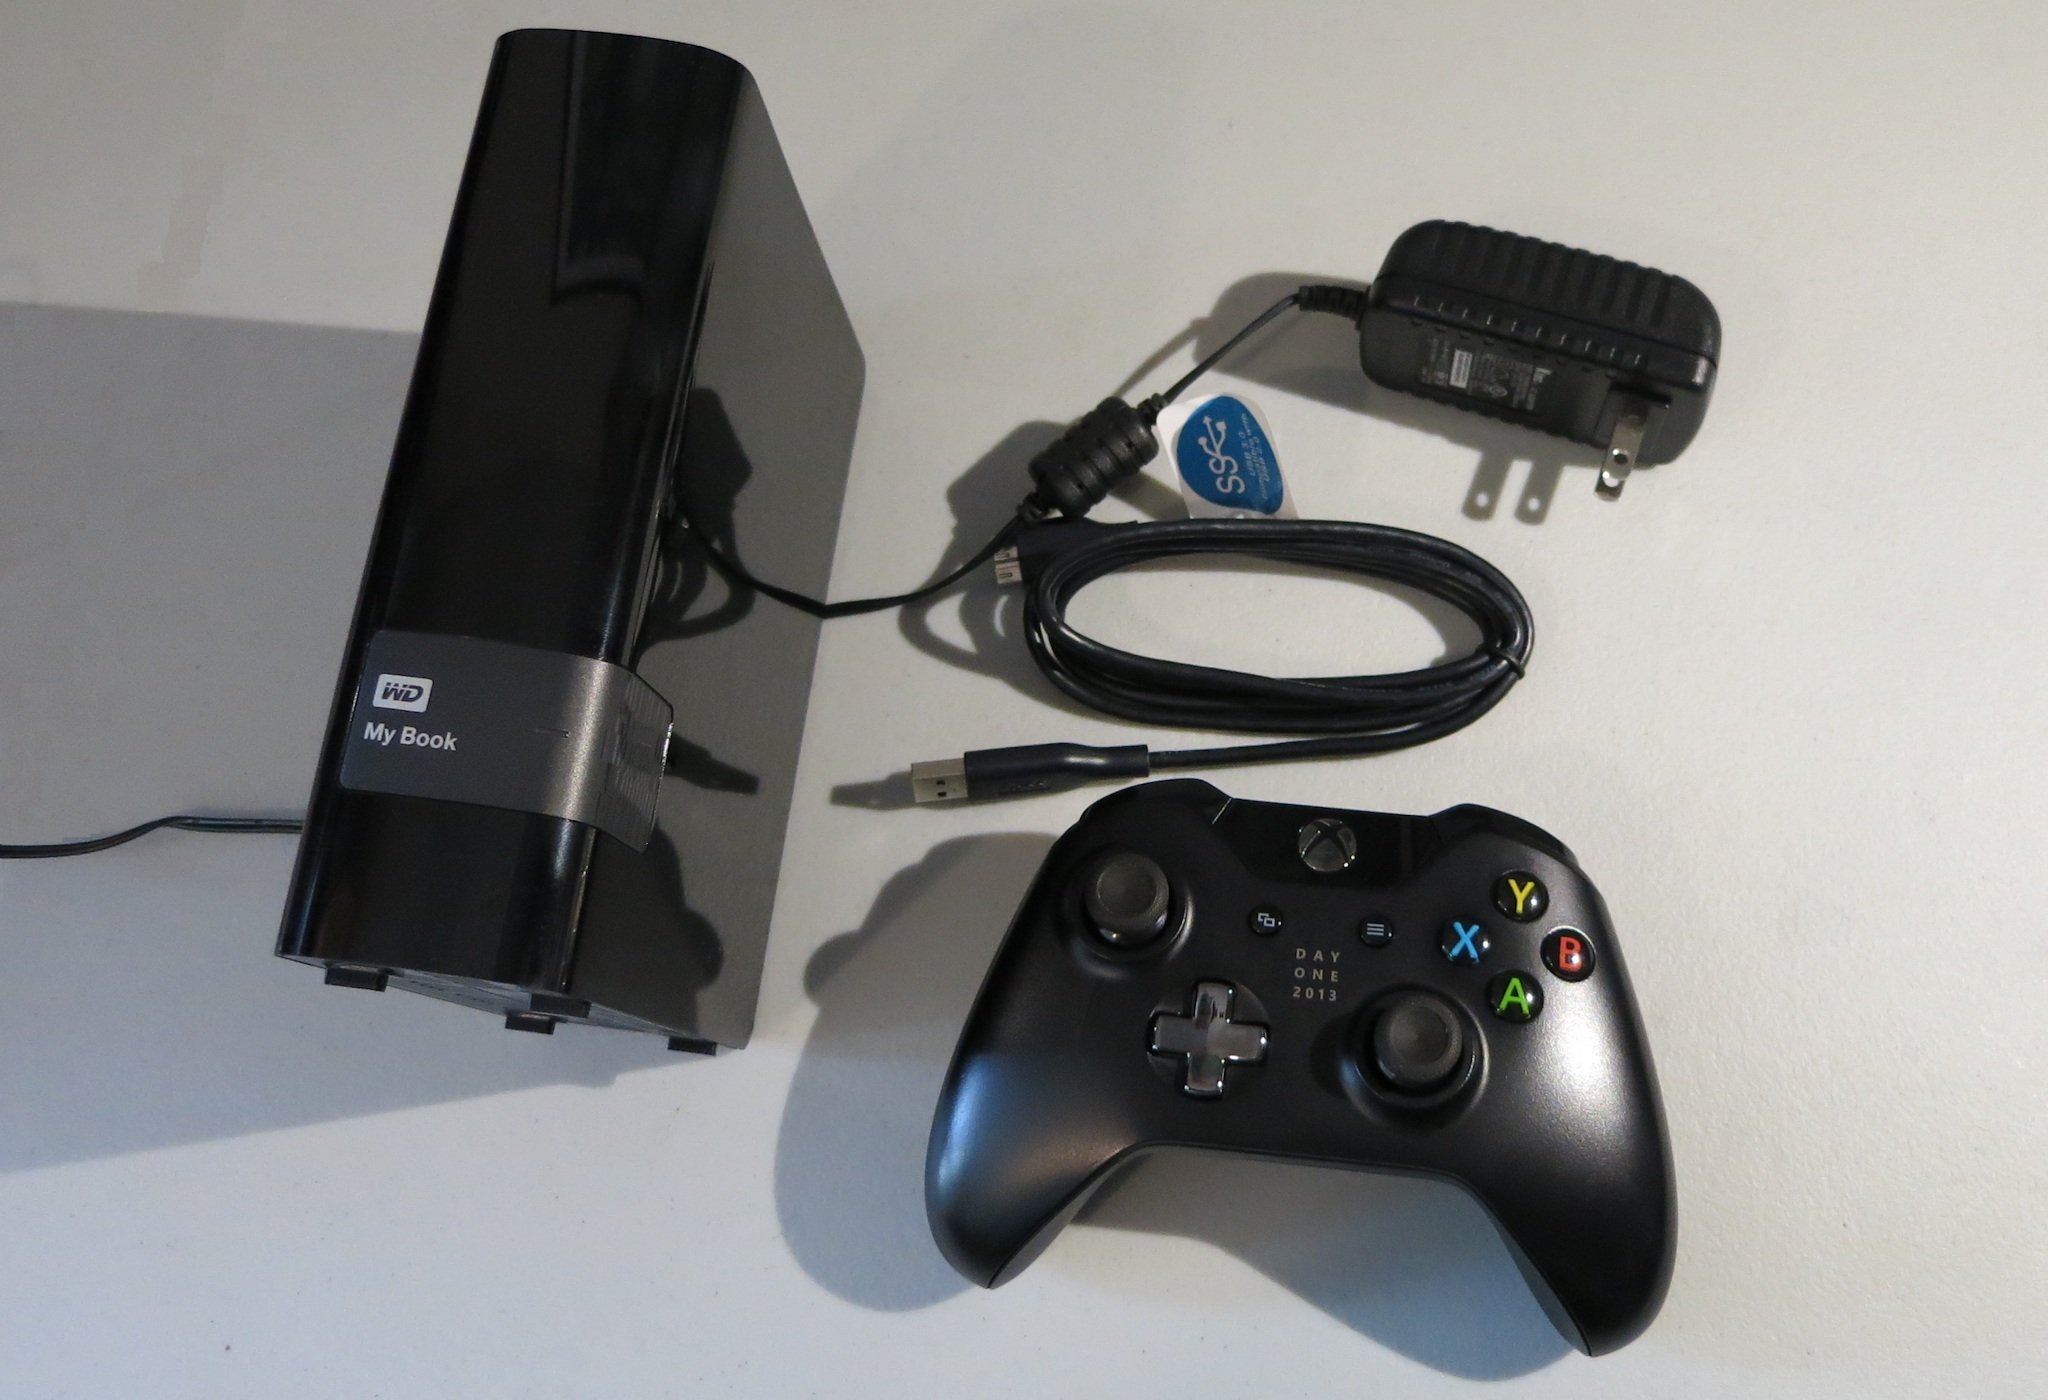 Xbox-One-external-hard-drive-photo.jpg